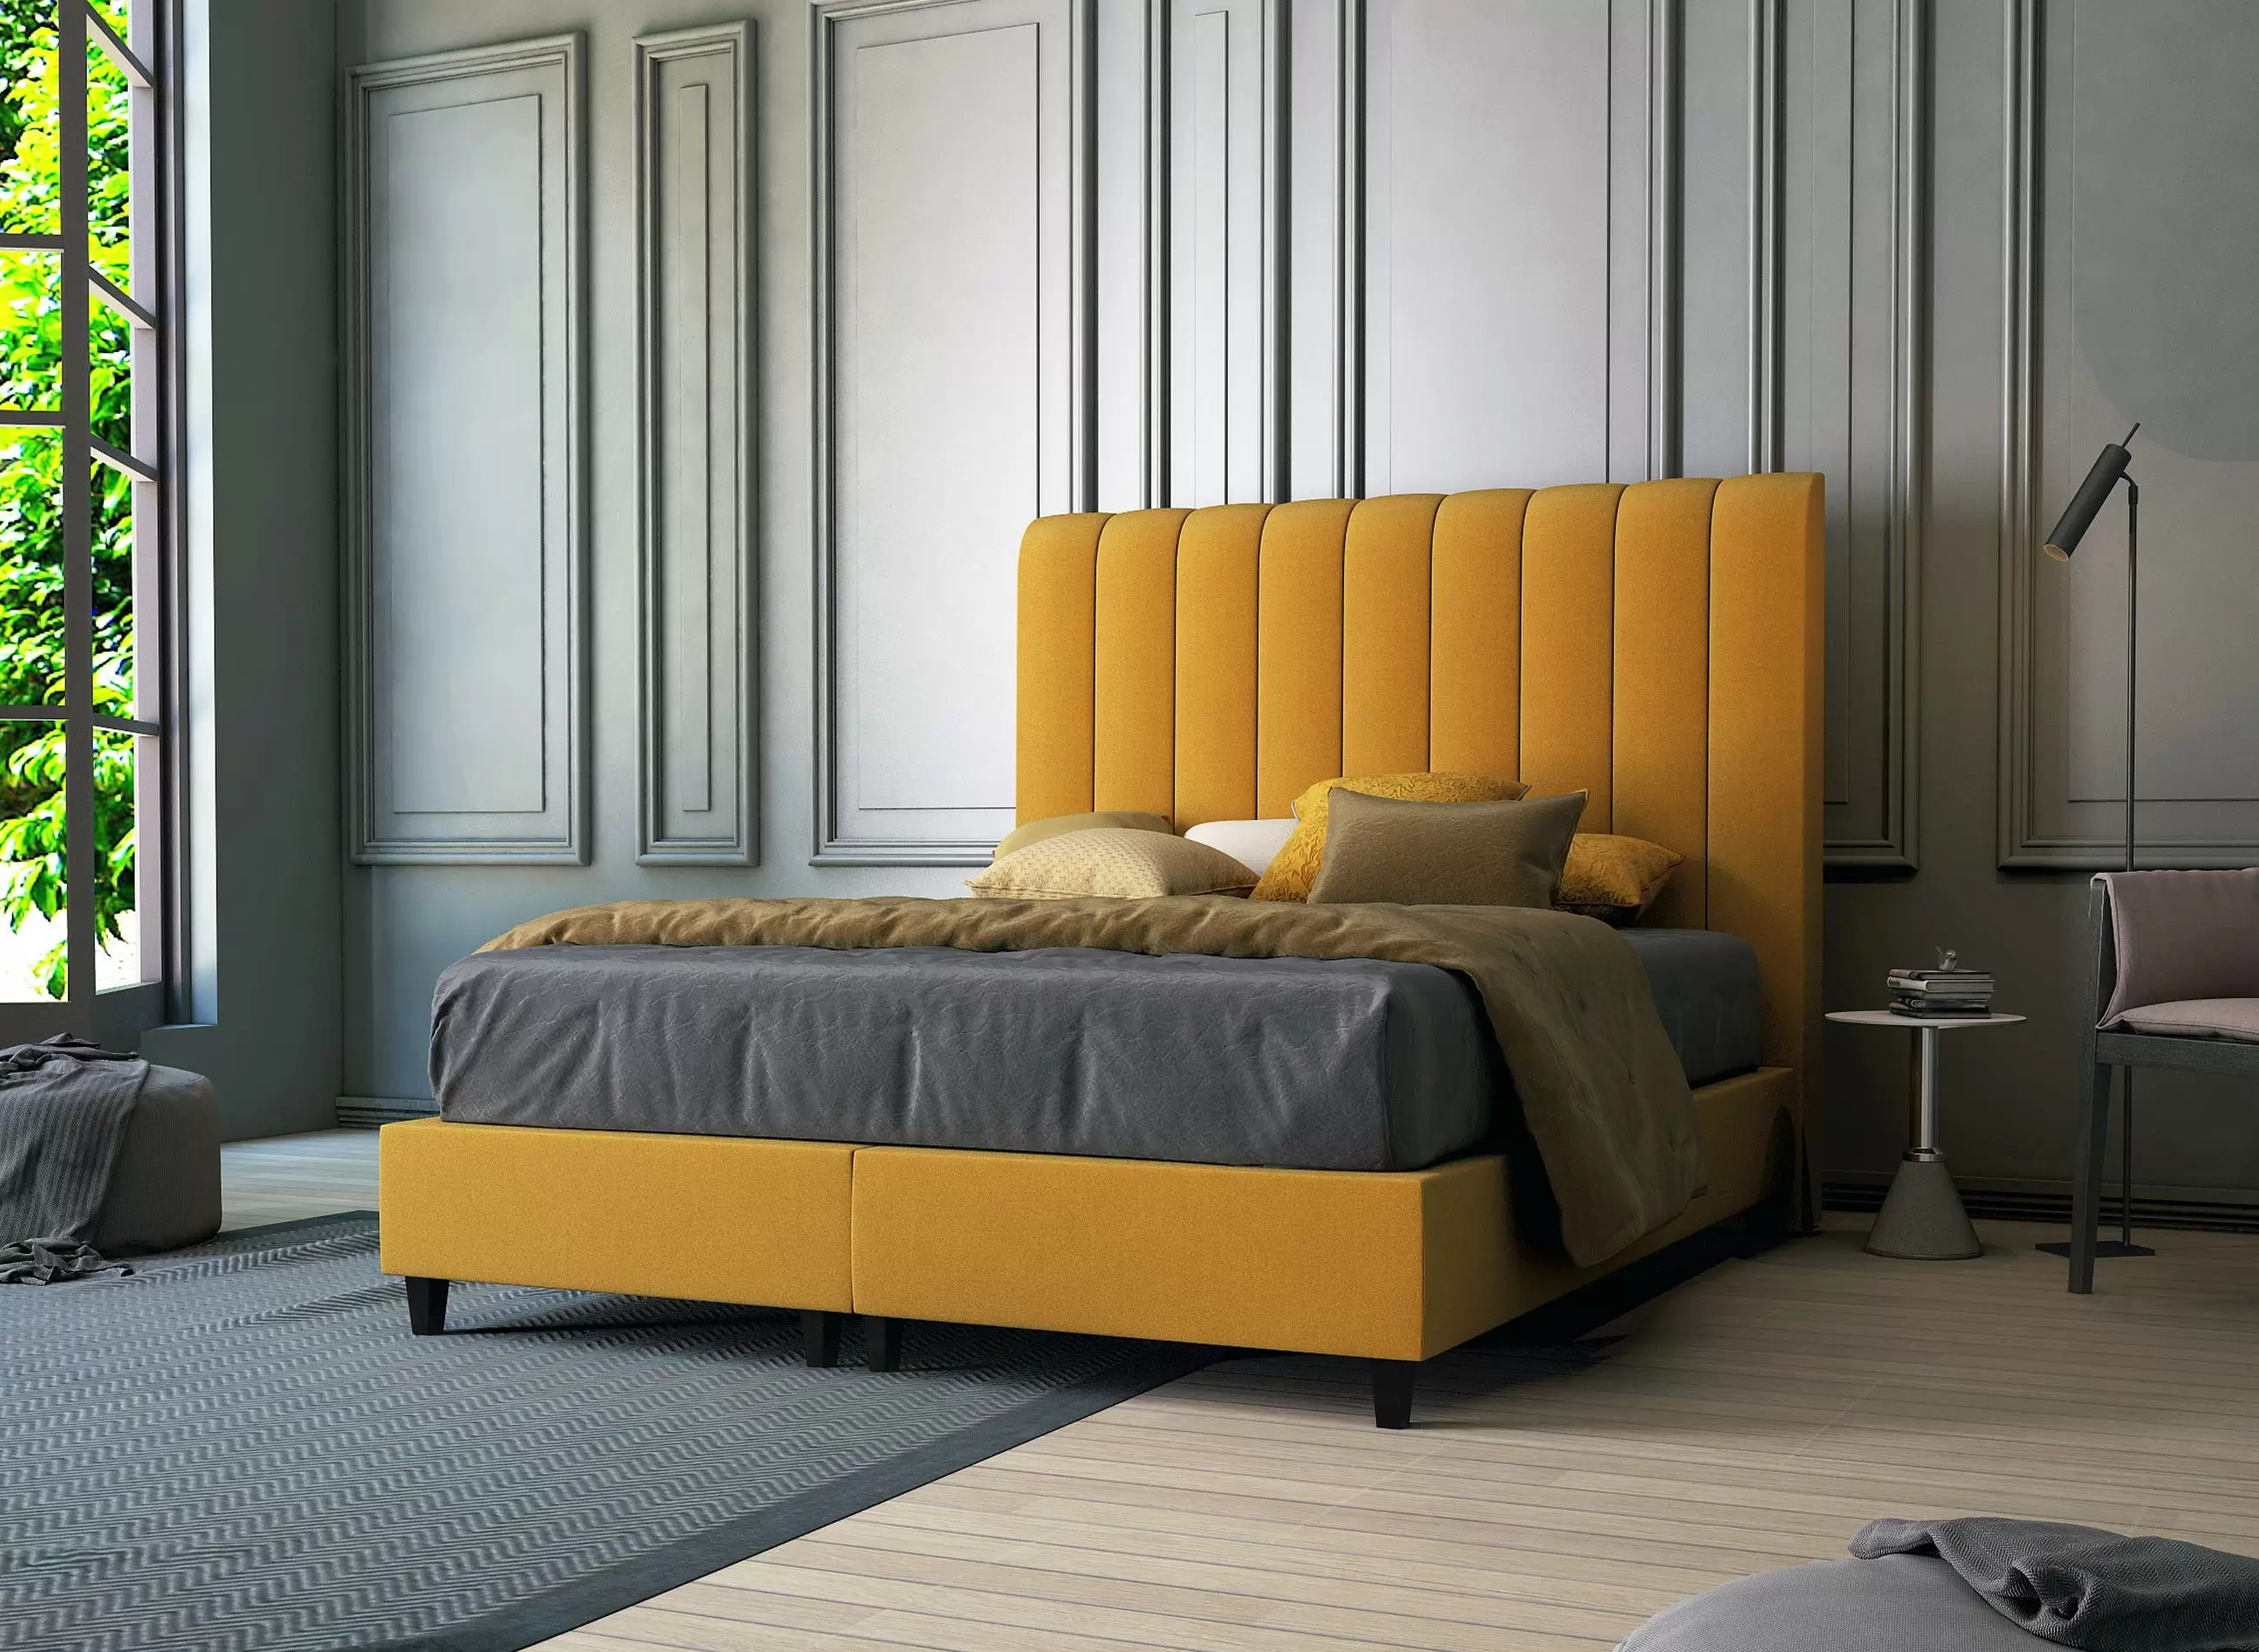 Горчичная кровать. Box Spring кровати. Кровать горчичного цвета. Спальня с желтой кроватью. Кровать с желтым изголовьем.